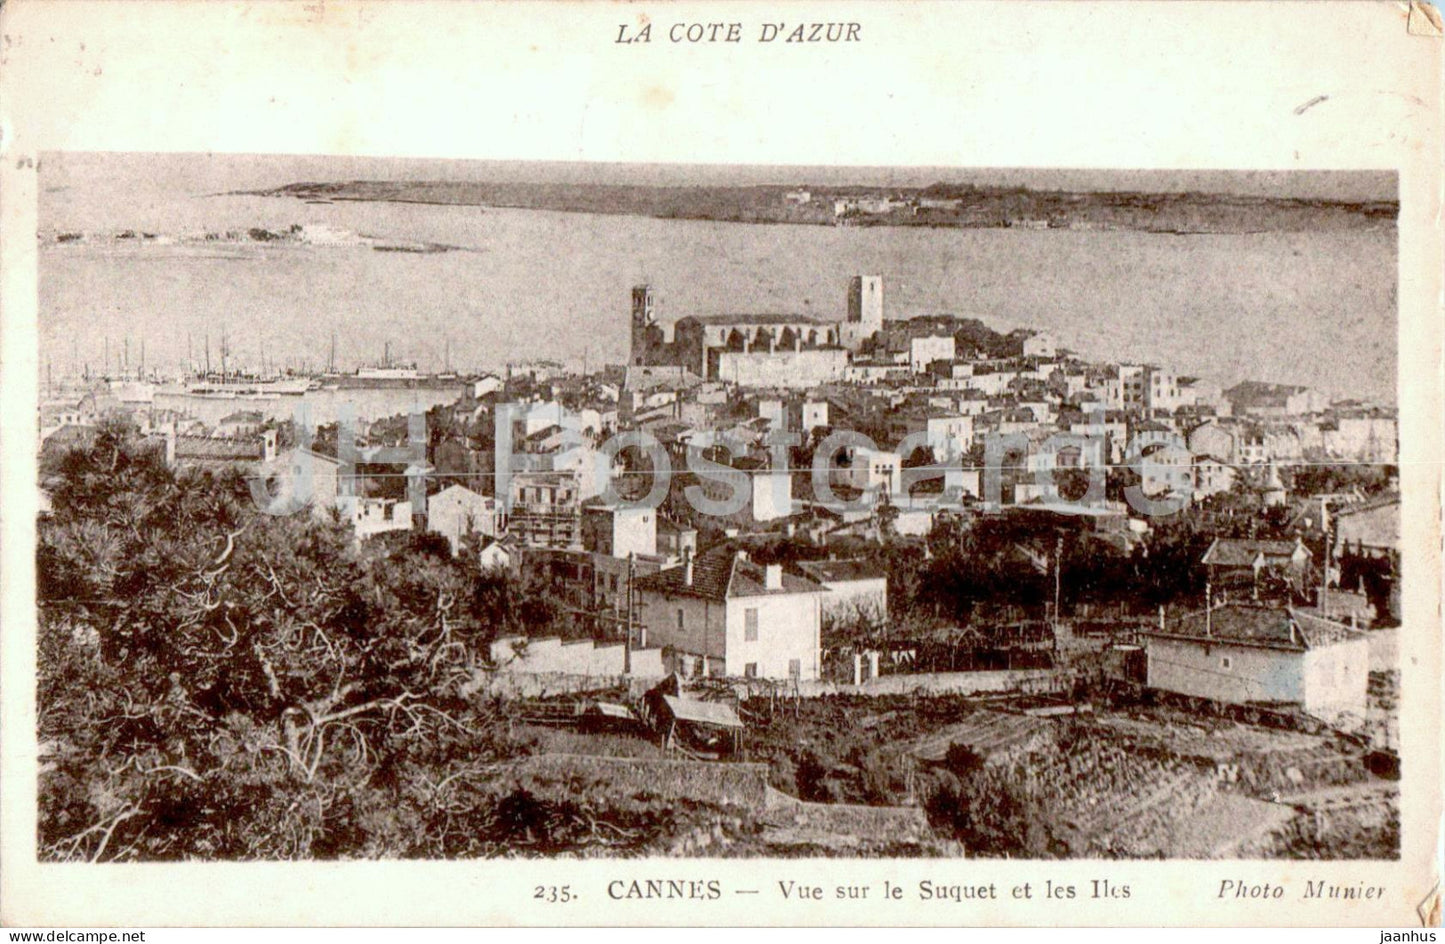 Cannes - Vue sur le Suquet et les Iles - La Cote D'Azur - 235 - old postcard - France - used - JH Postcards